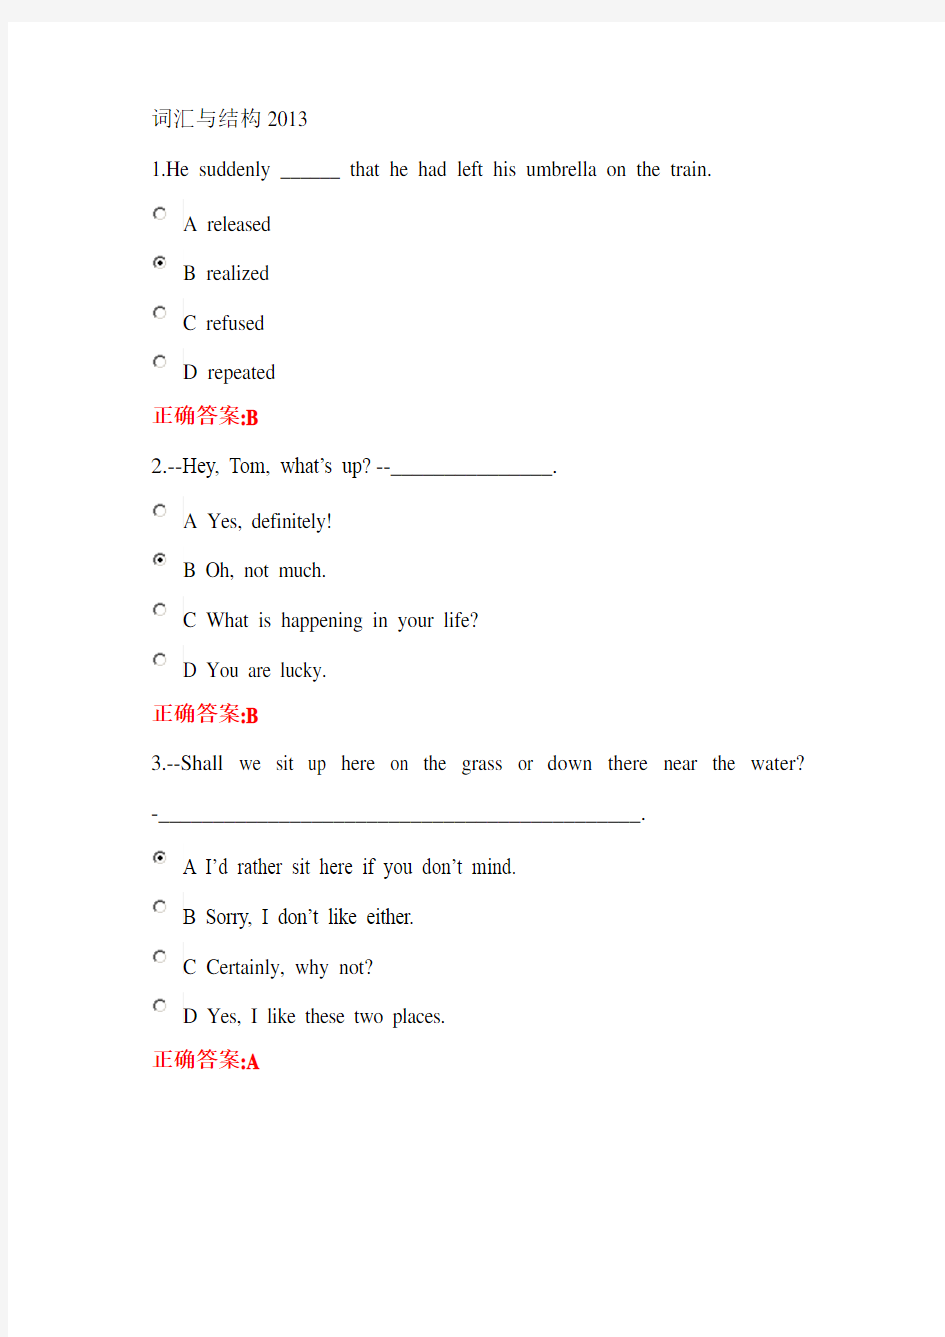 浙大远程英语(1)在线作业1-6答案